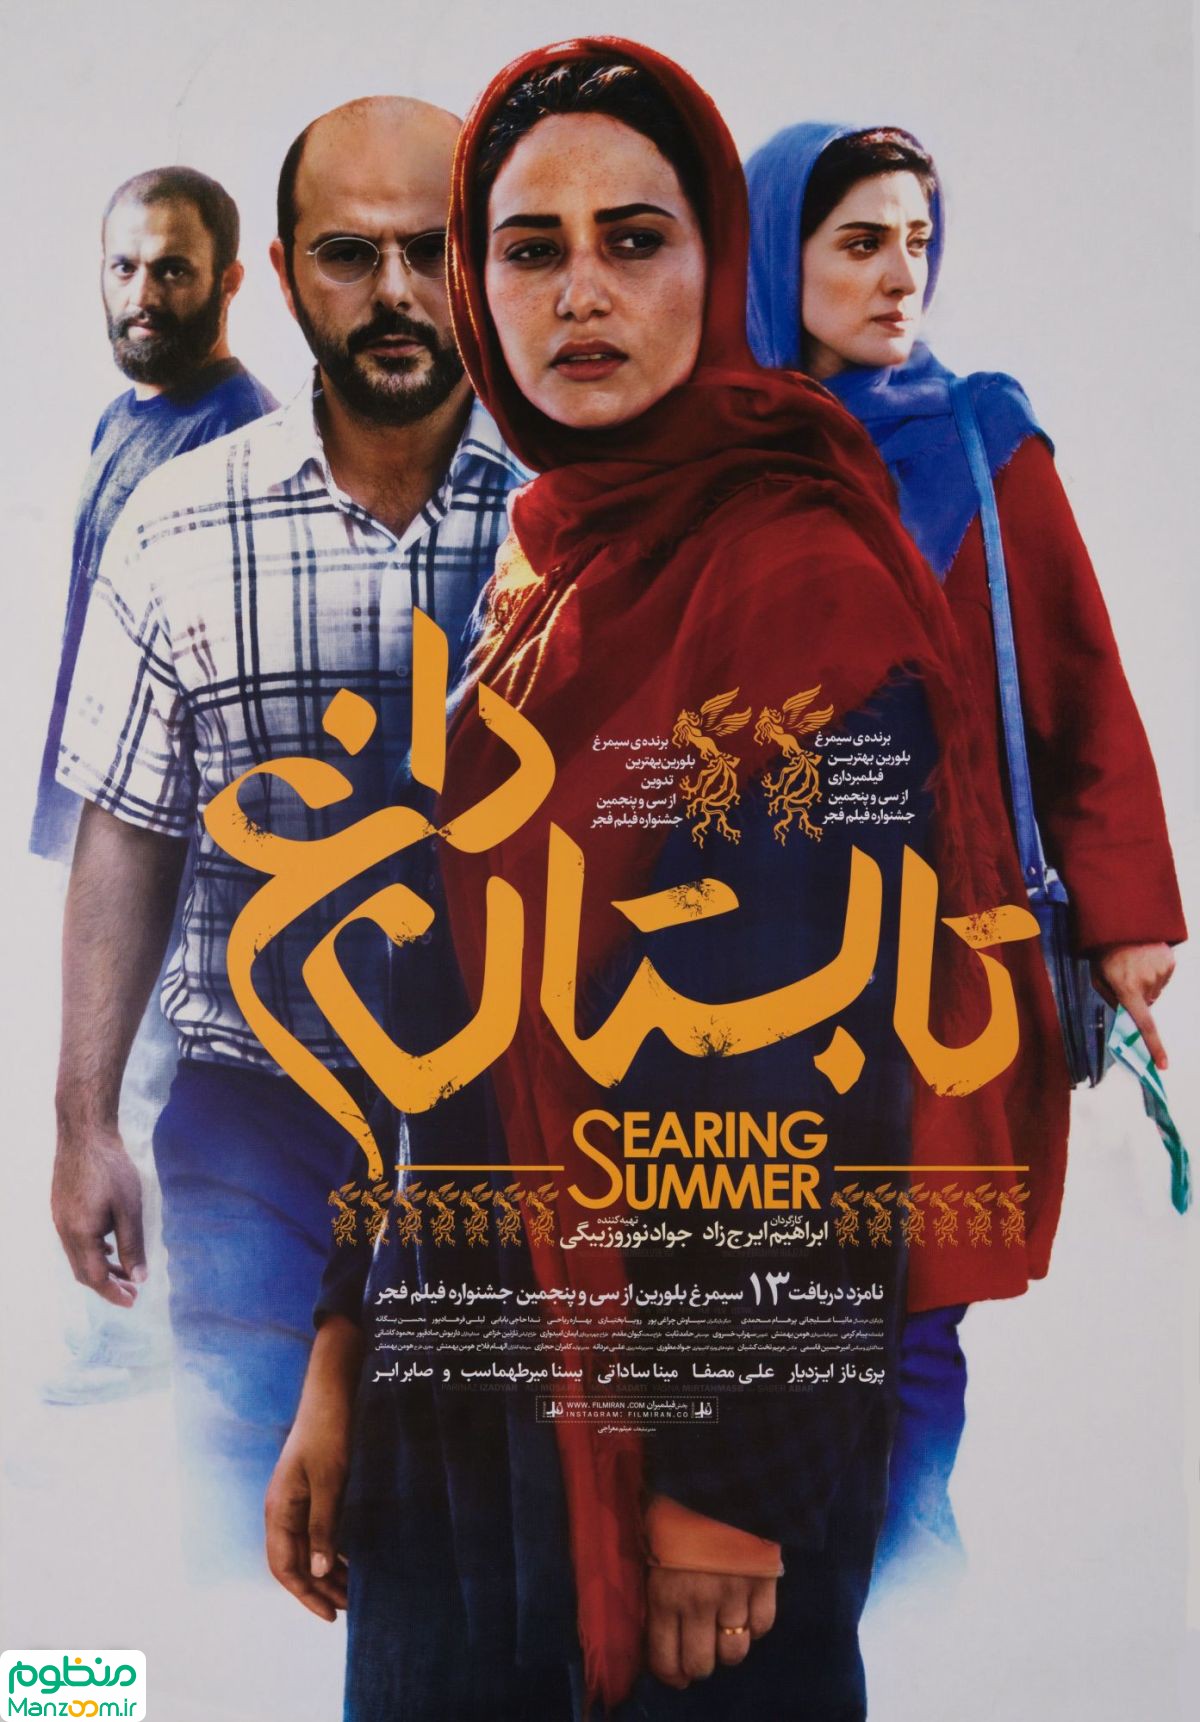  فیلم سینمایی تابستان داغ به کارگردانی ابراهیم ایرج زاد